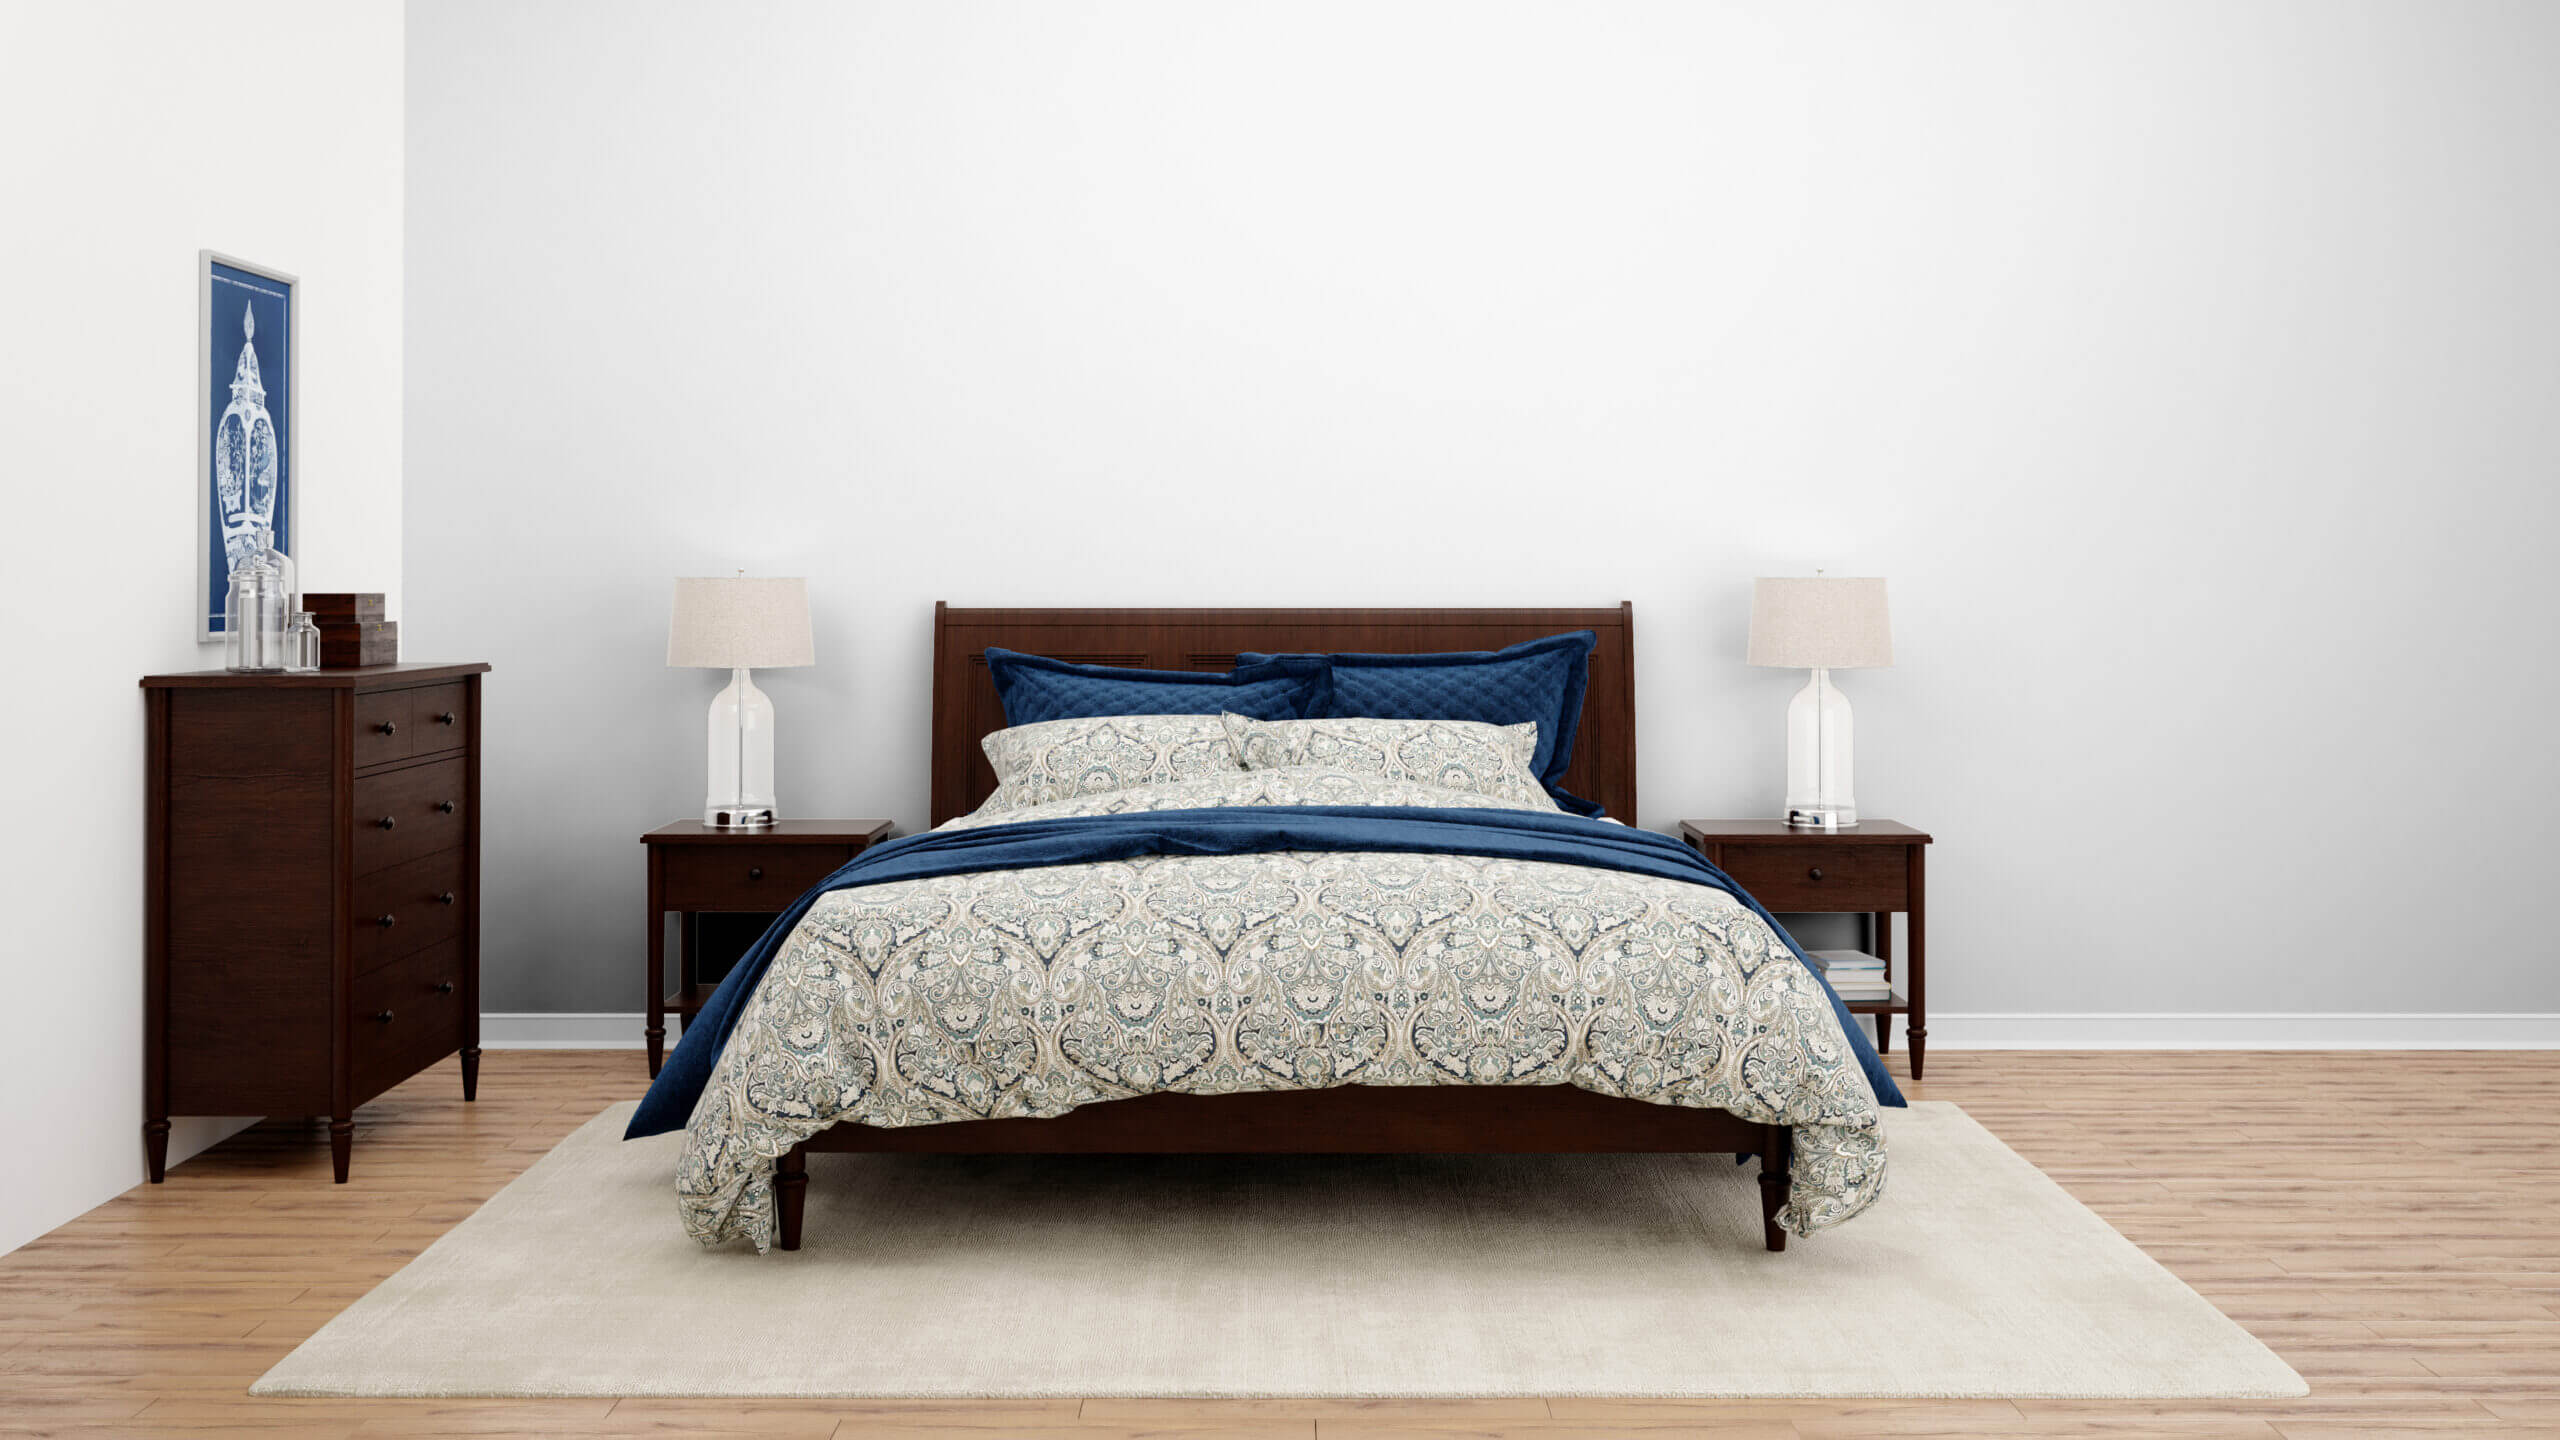 Bett 160×200: Ein gemütliches, langlebiges Bett für guten Schlaf